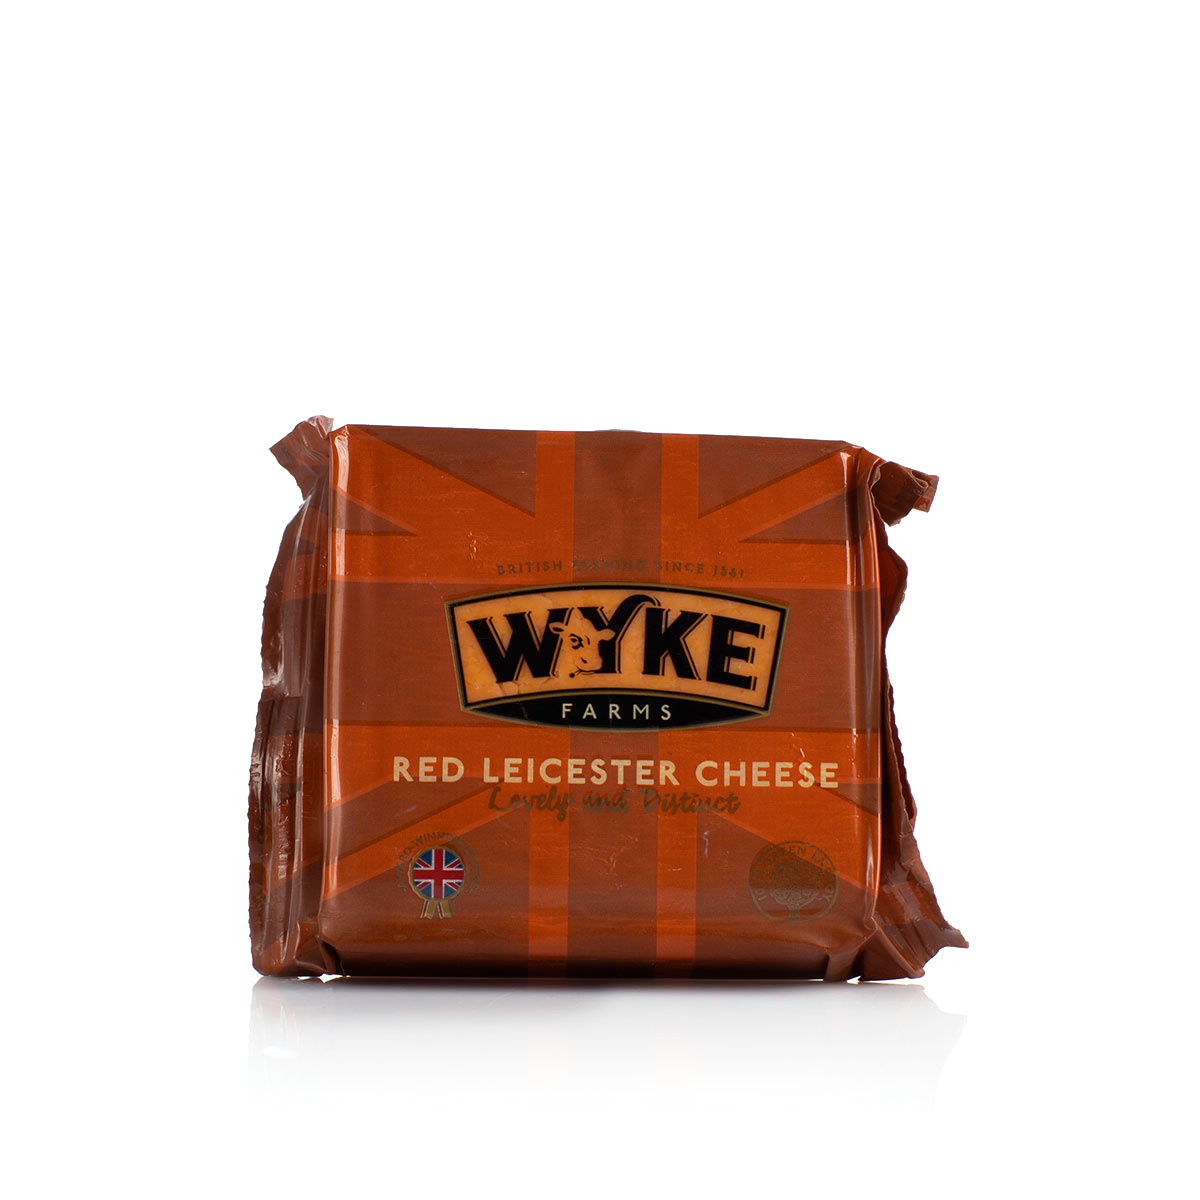 Wyke Farmsred Leicester Cheddar Cheese 200G - WYKE FARMS - Cheese - in Sri Lanka